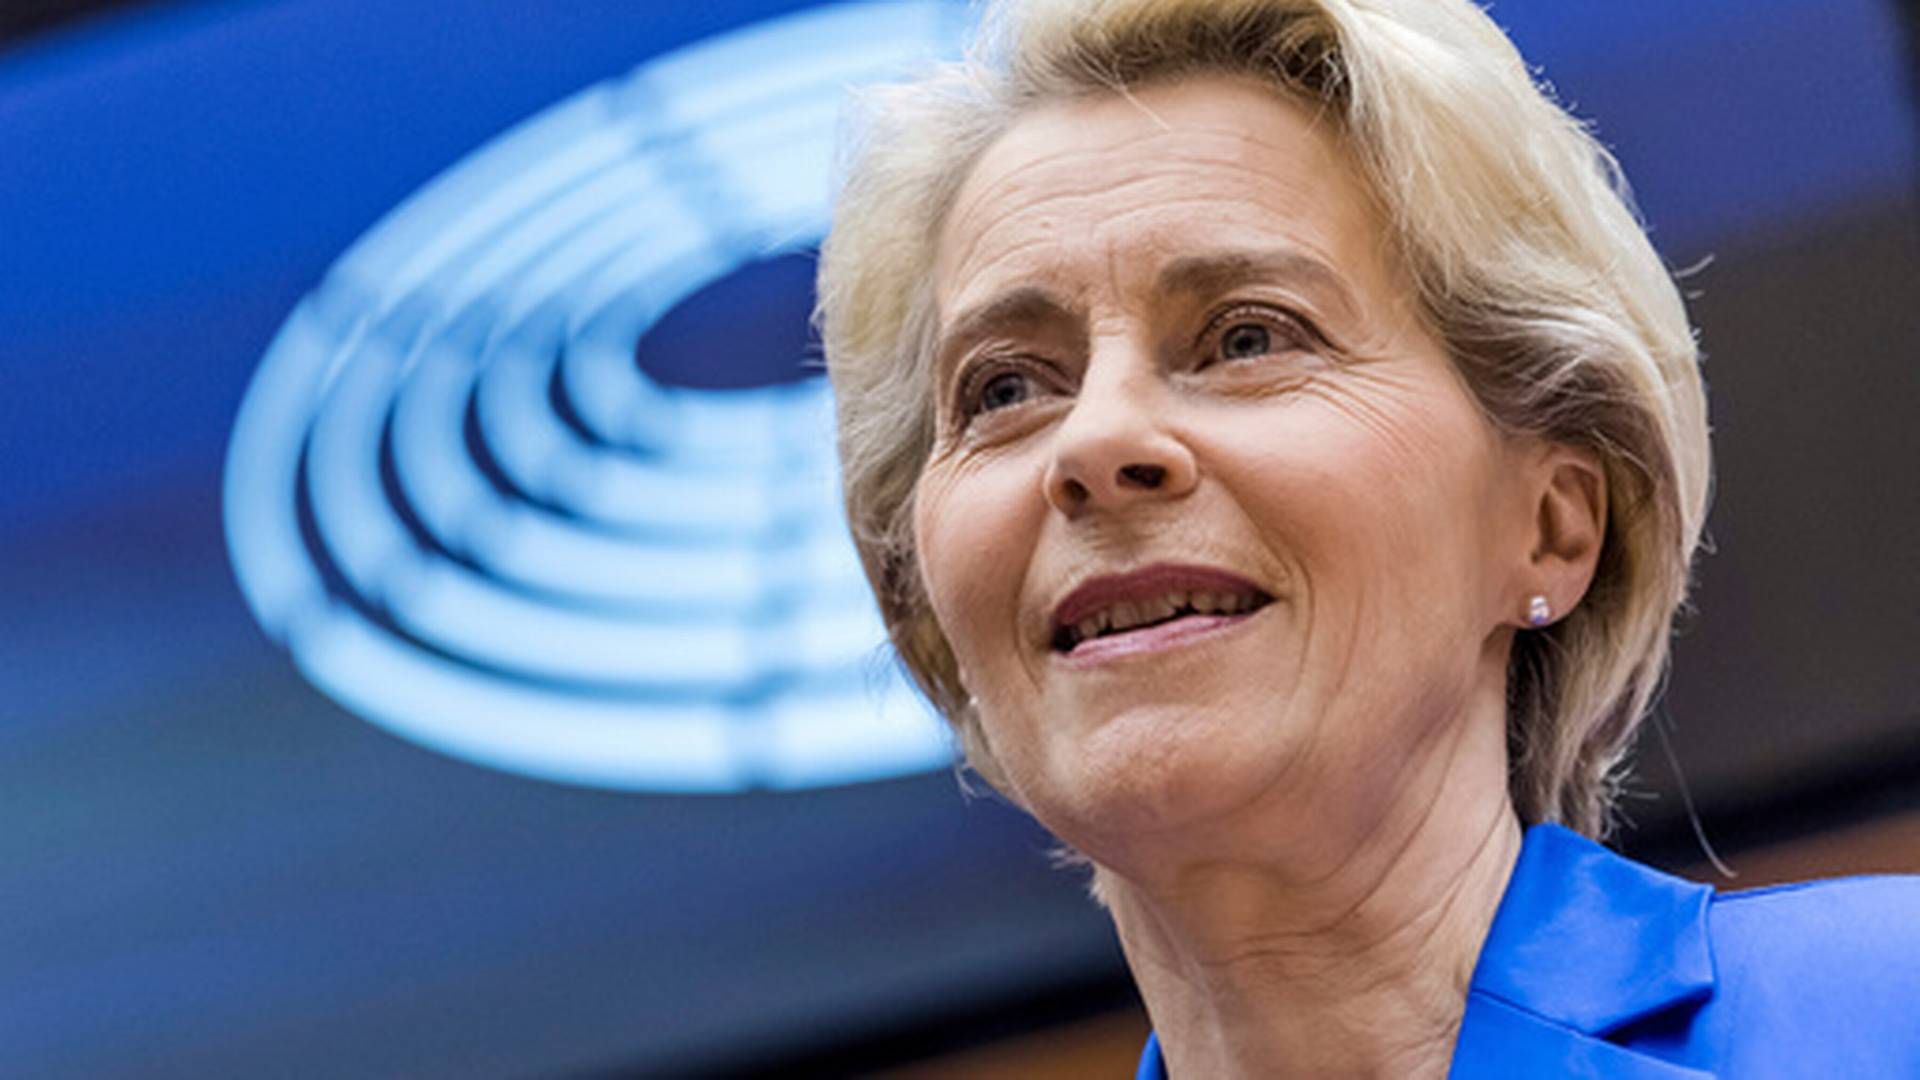 VILLE SKRU NED: EU-kommisjonens president Ursula von der Leyen foreslo torsdag å senke pristaket til 60 dollar fatet. Men Polen er fortsatt ikke fornøyd. | Foto: Geert Vanden Wijngaert/AP/NTB scanpix